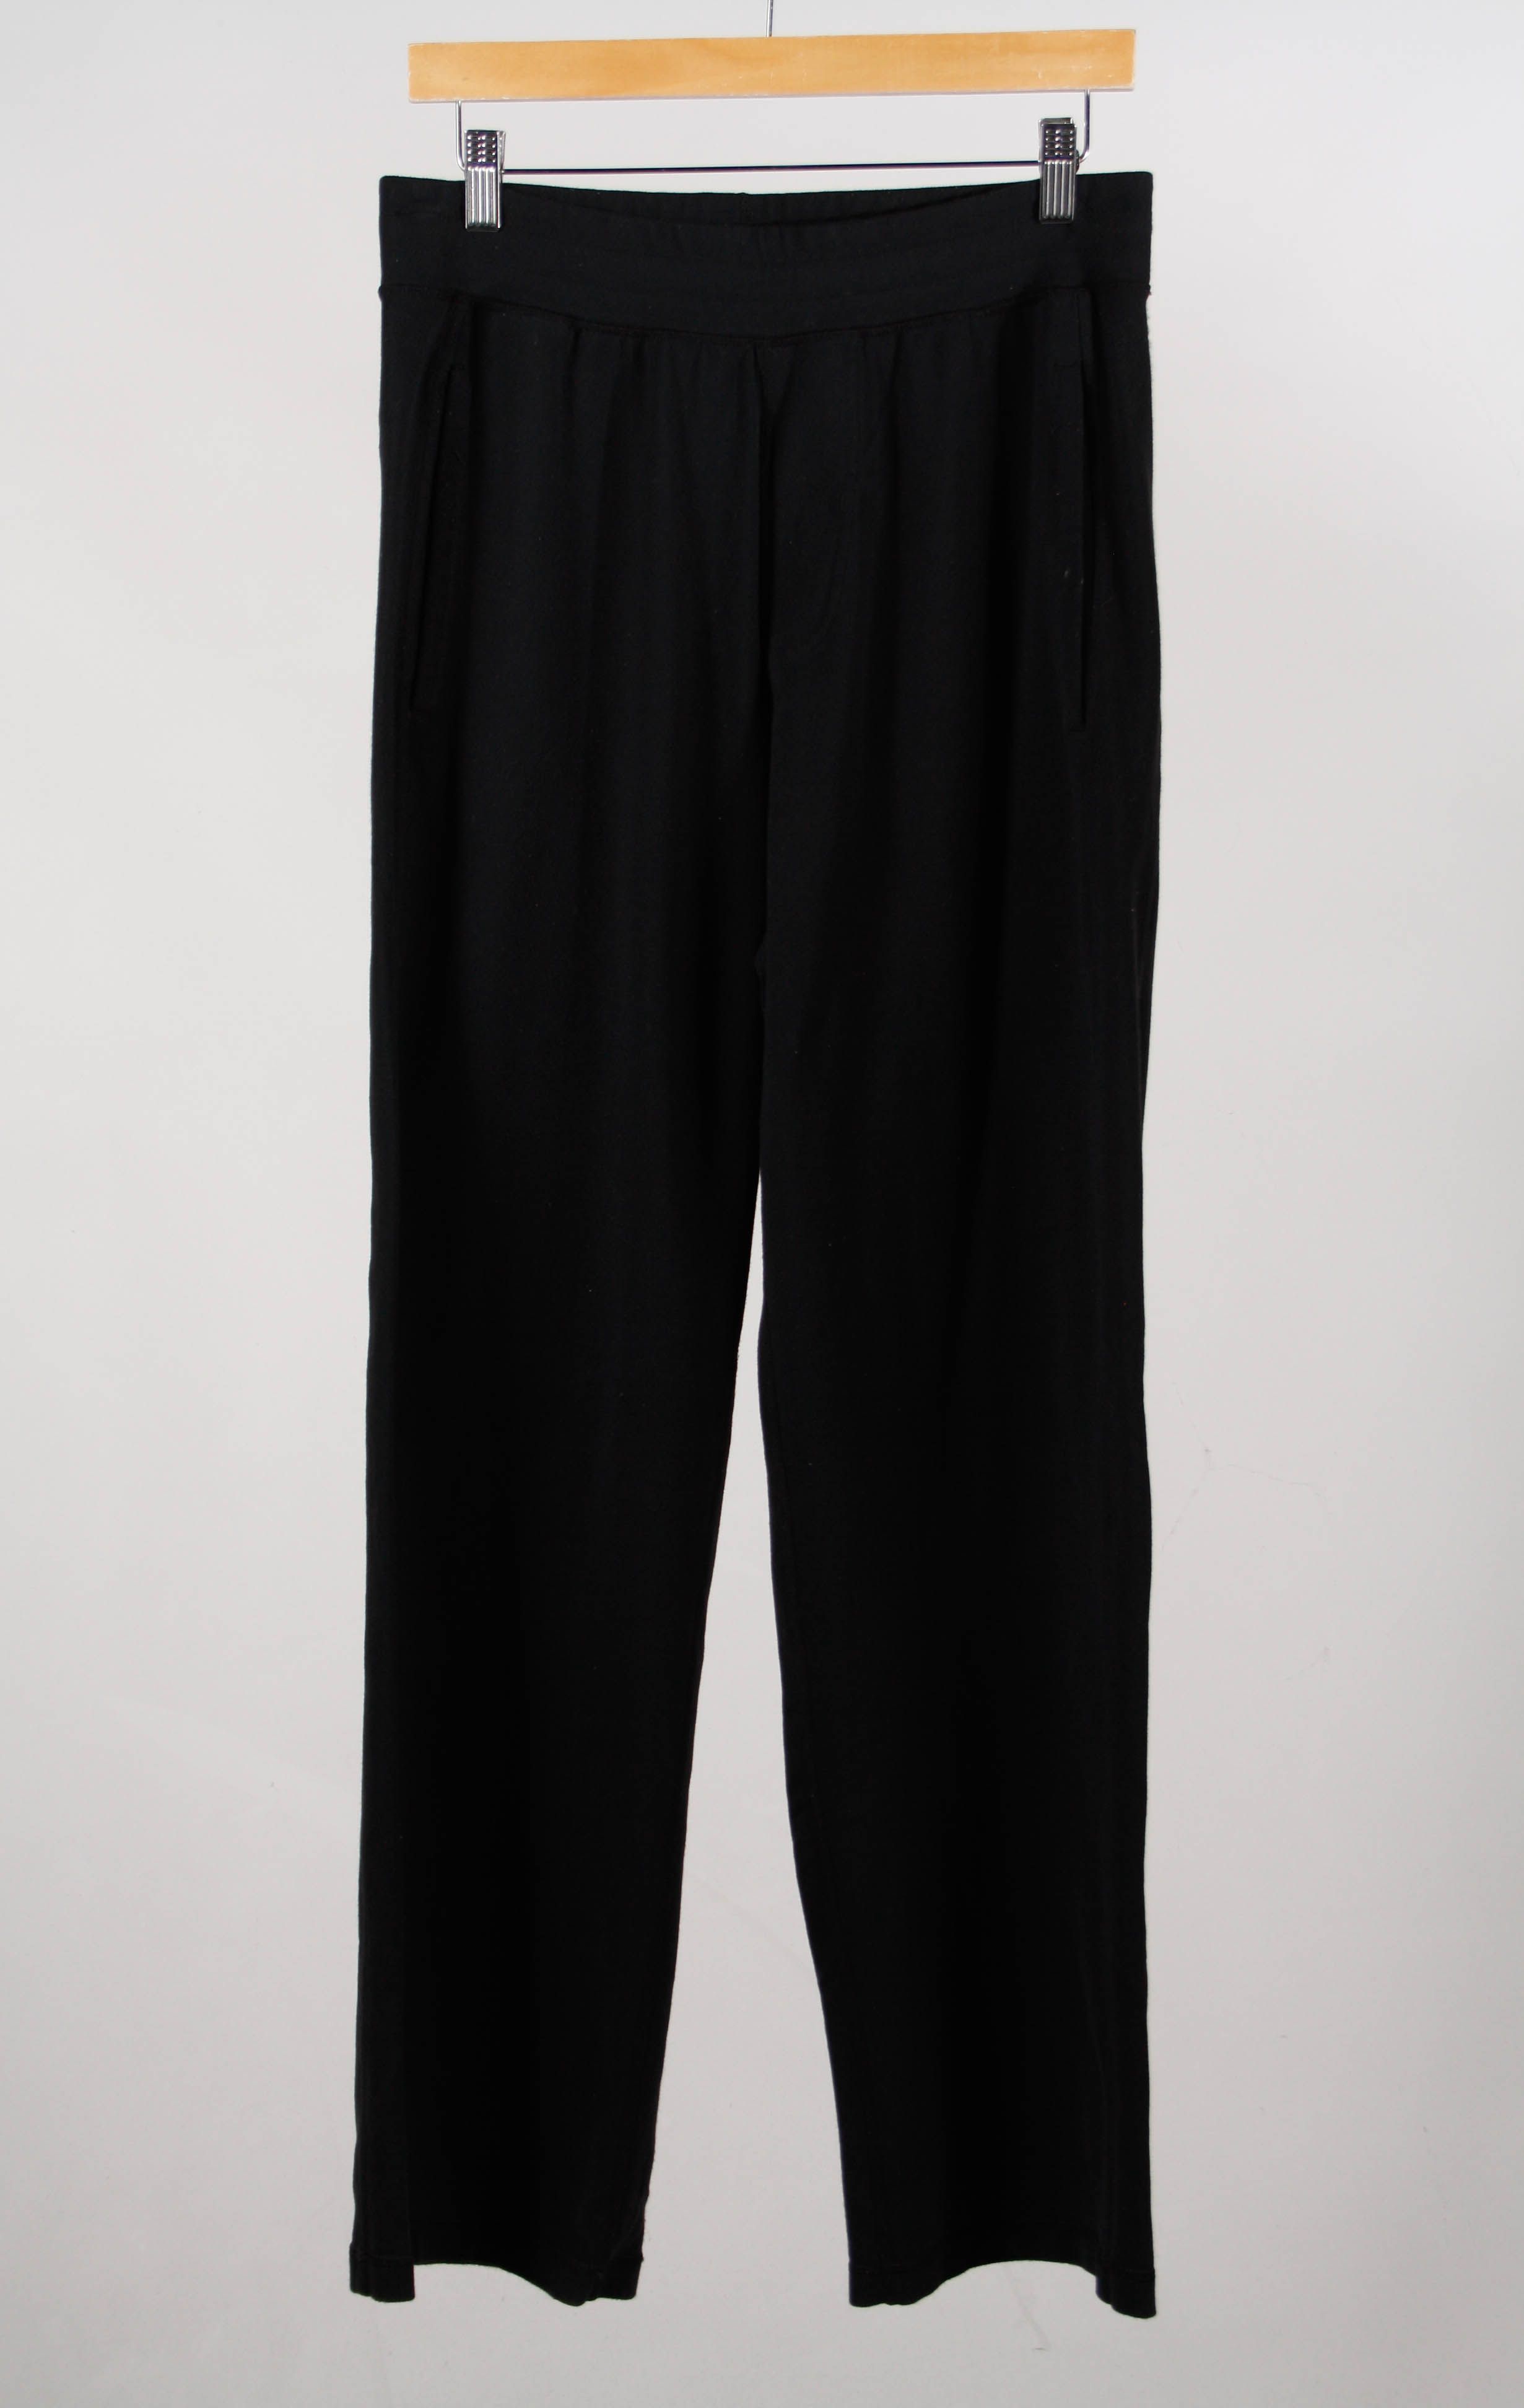 Lululemon Size 6 Cropped Pants Black Drawstring Elastic Waist Athletic Wide  Leg